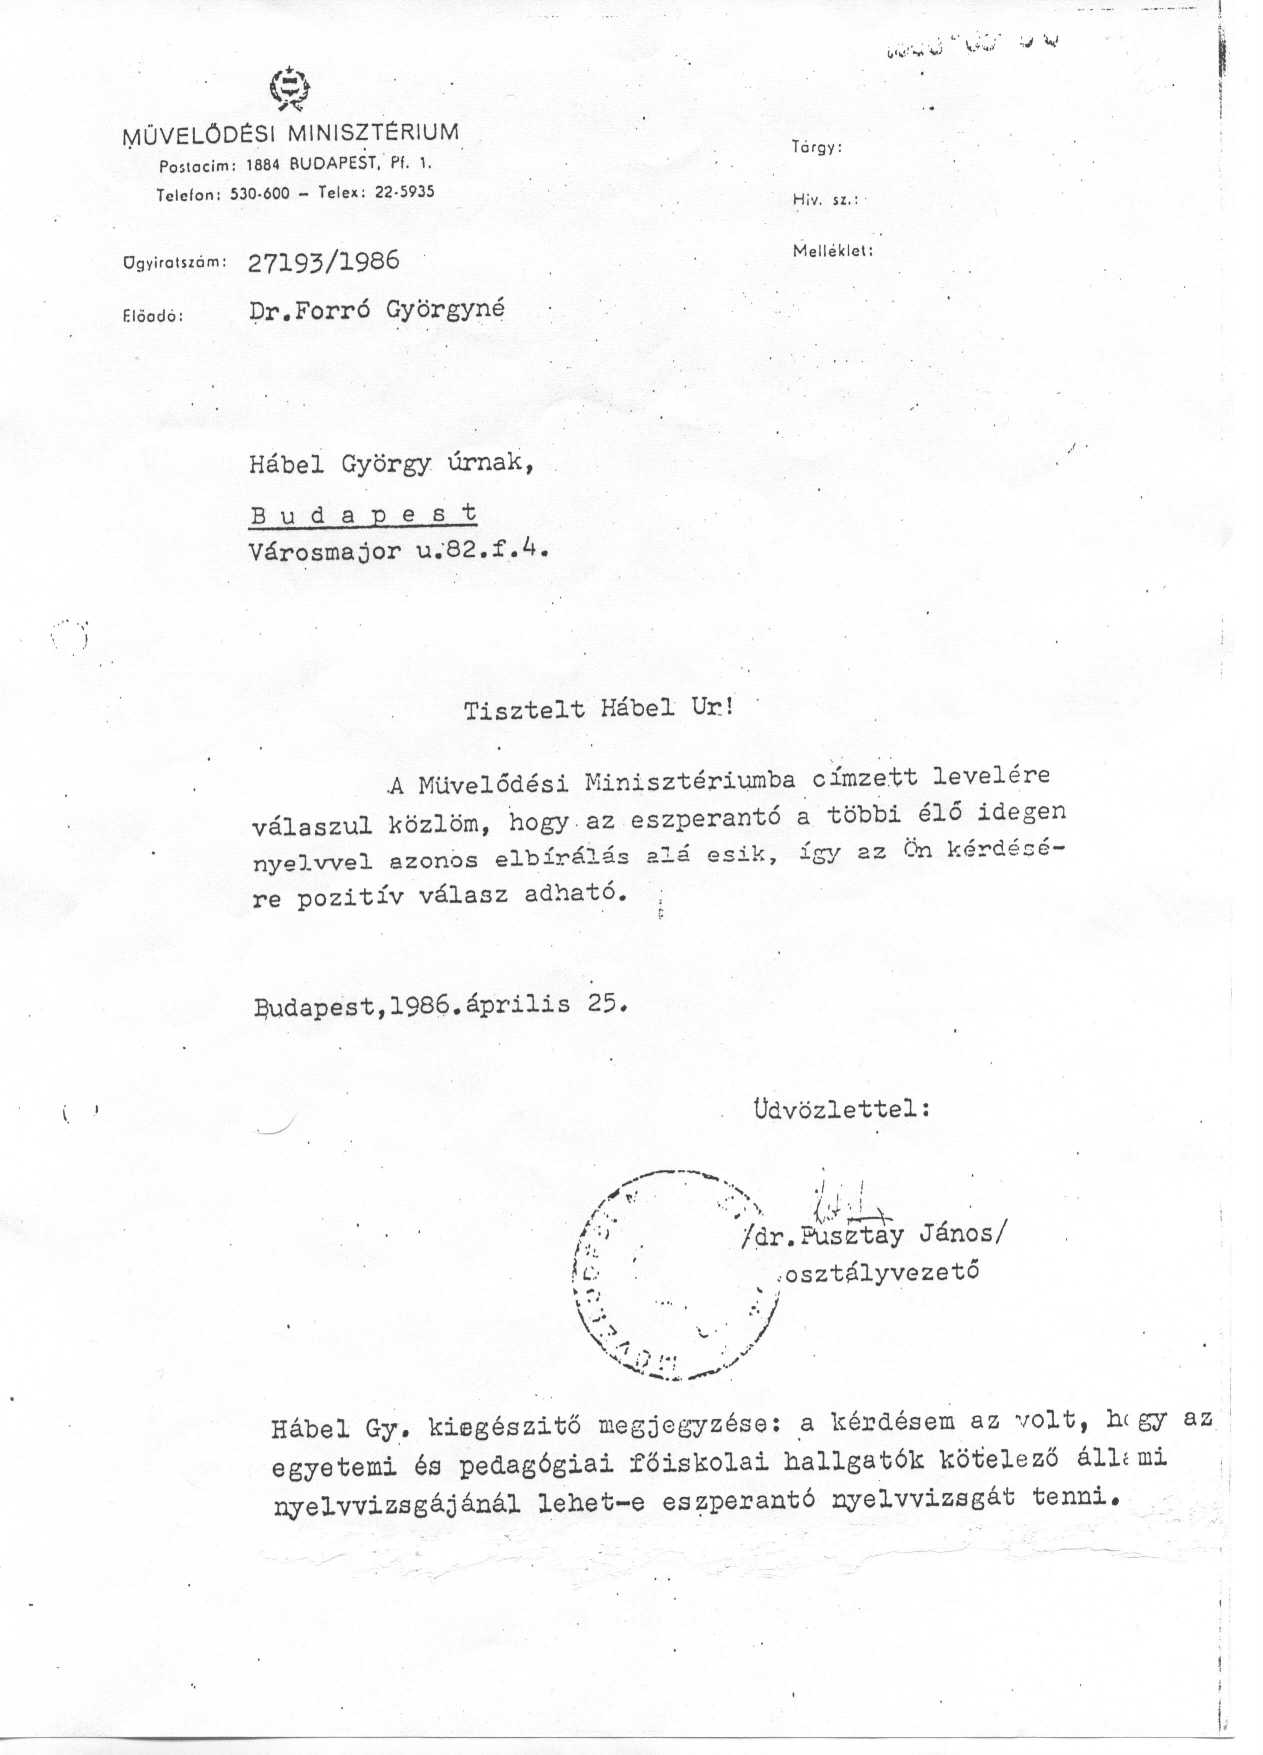  A Művelődési Minisztérium állásfoglalása az eszperantó élő nyelv jellegéről 